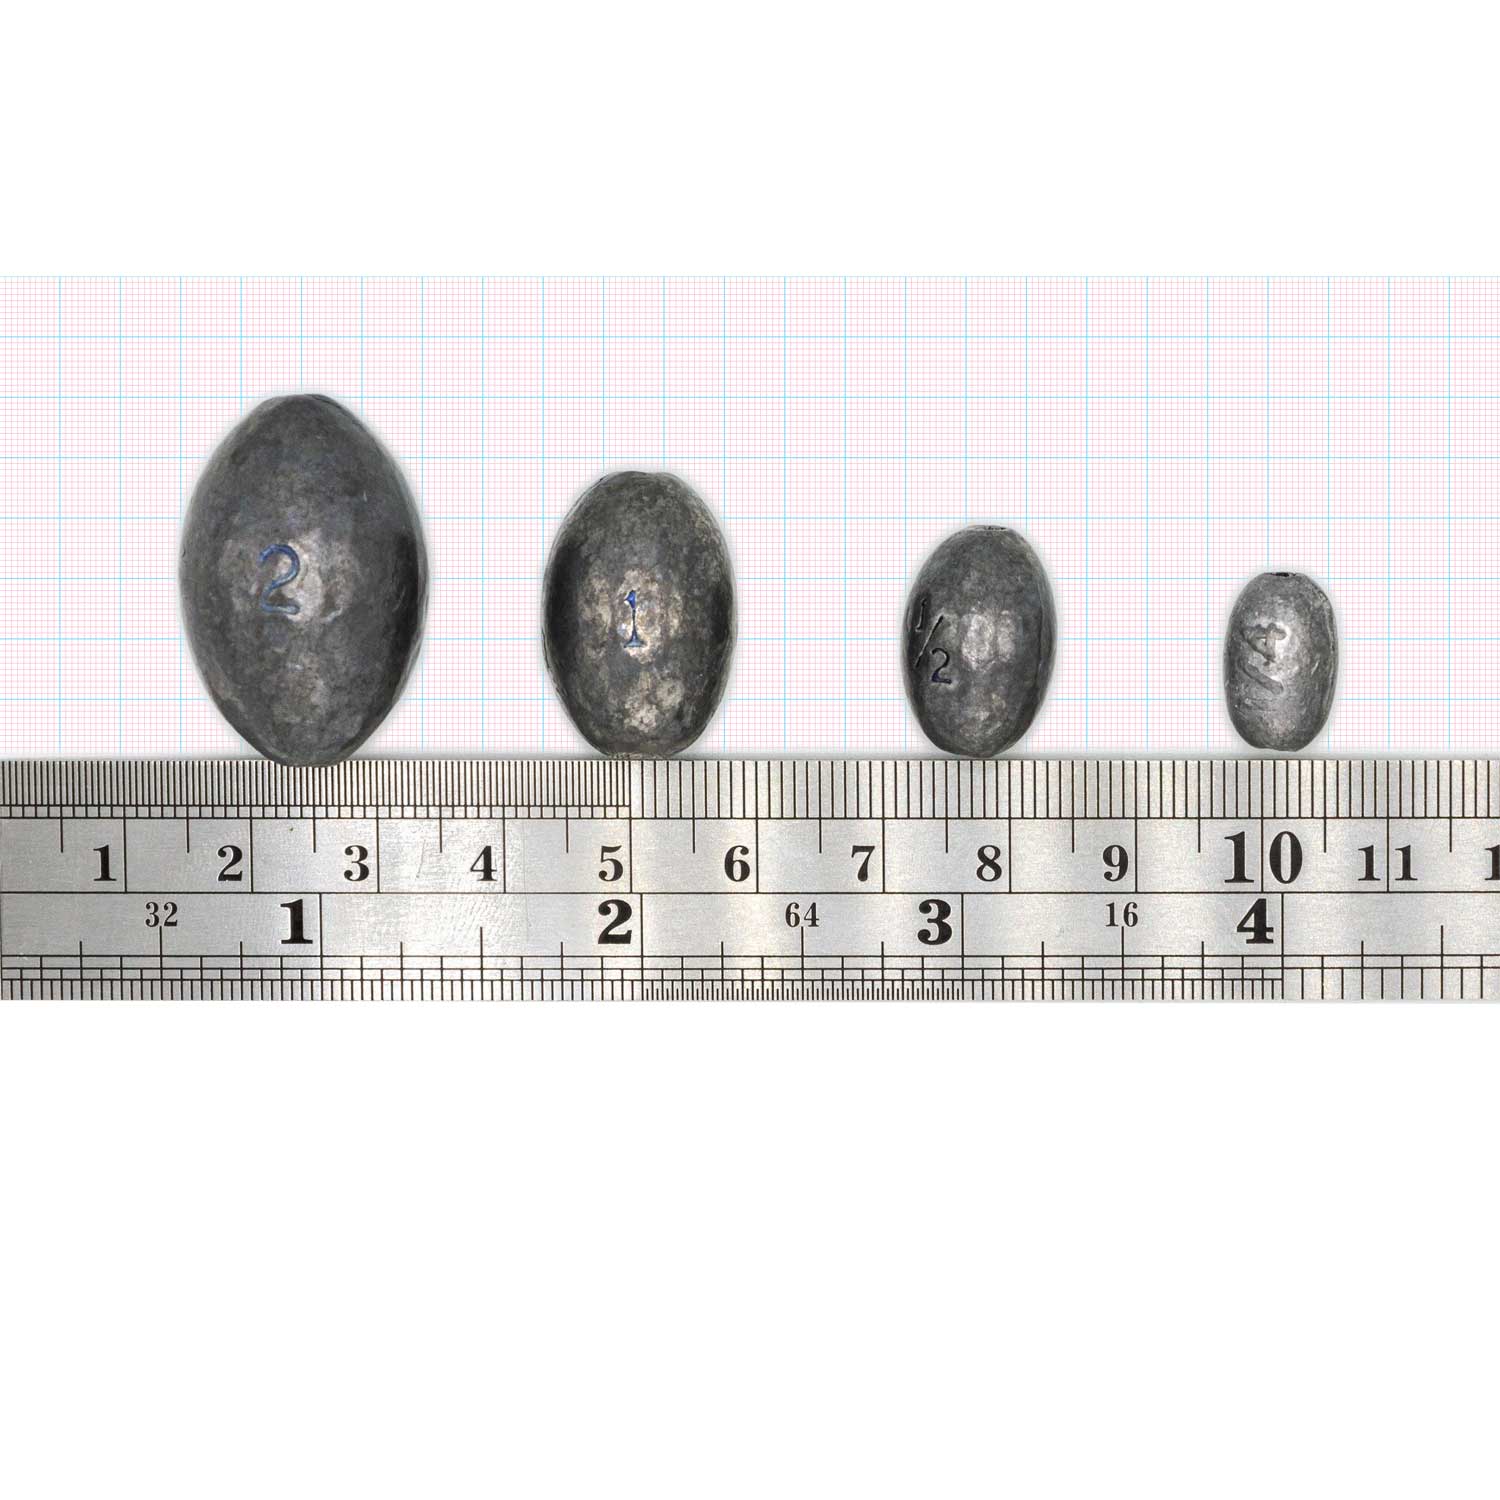 https://riteangler.com/cdn/shop/products/rite-angler-egg-sinker-kit-sizes.jpg?v=1646421653